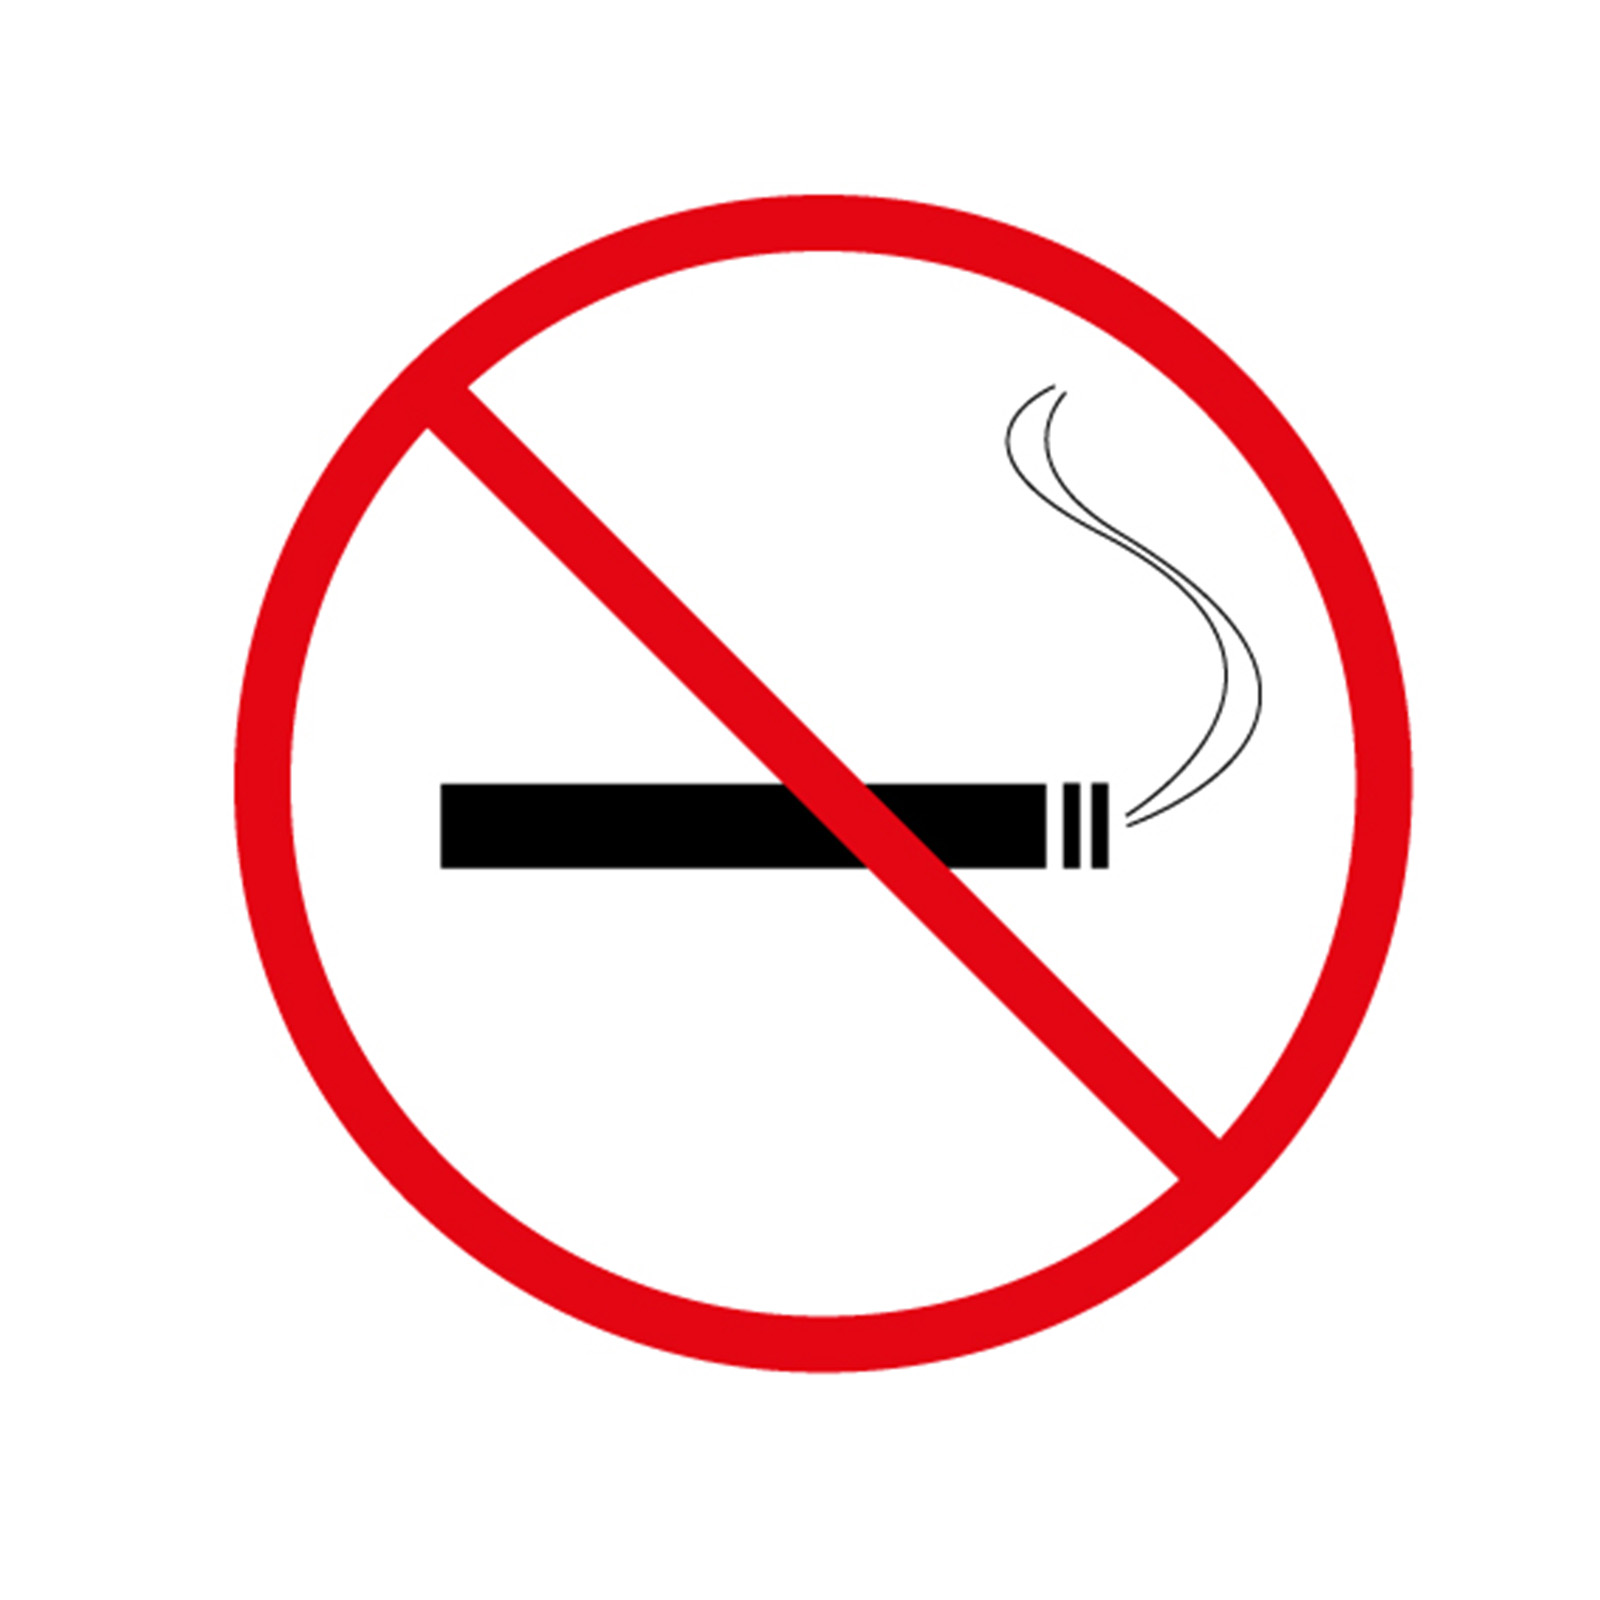 Grafik: Signete: Rauch - Verbot.